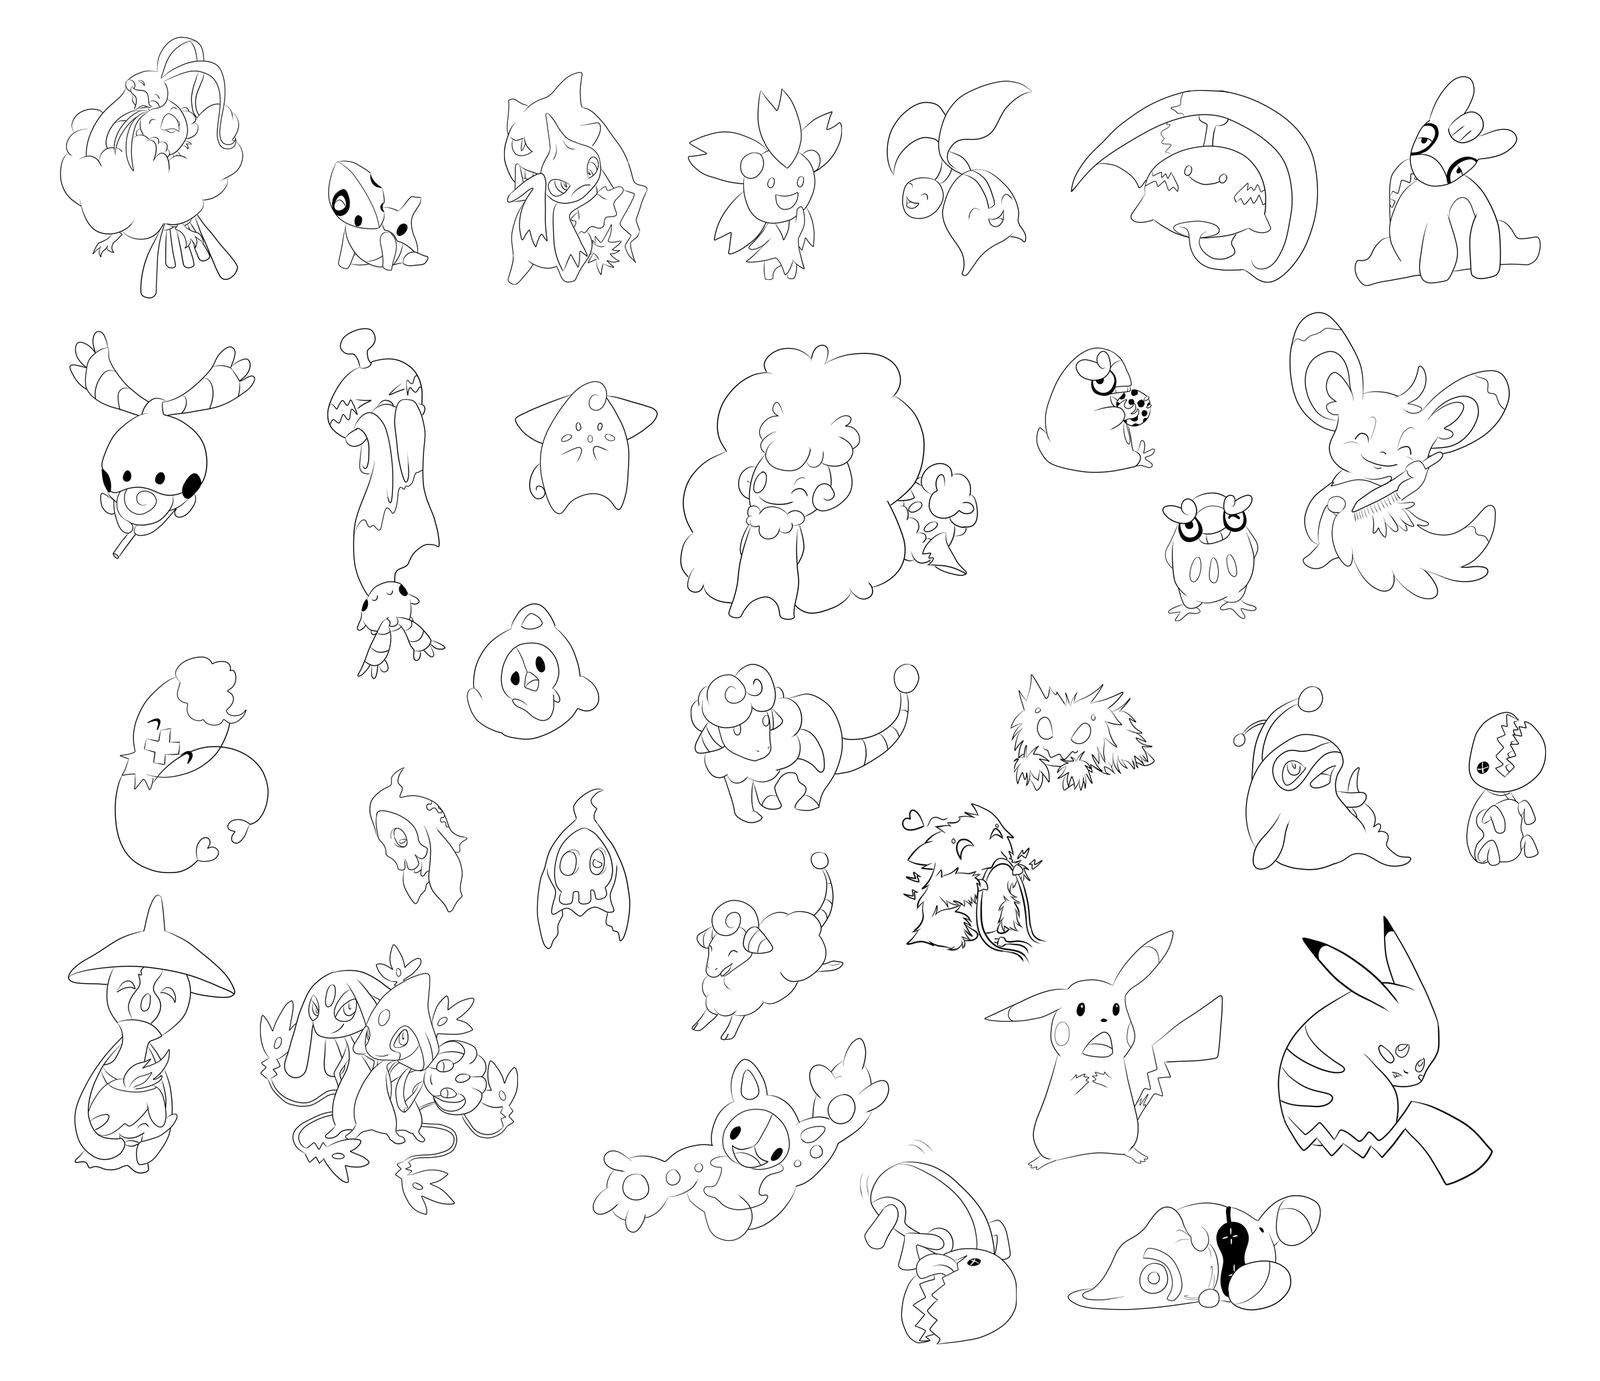 Drawing Ideas Pokemon /drawing Ideas Pokemon/ HD Wallpaper. Pokemon Drawings, Drawings, Pokemon